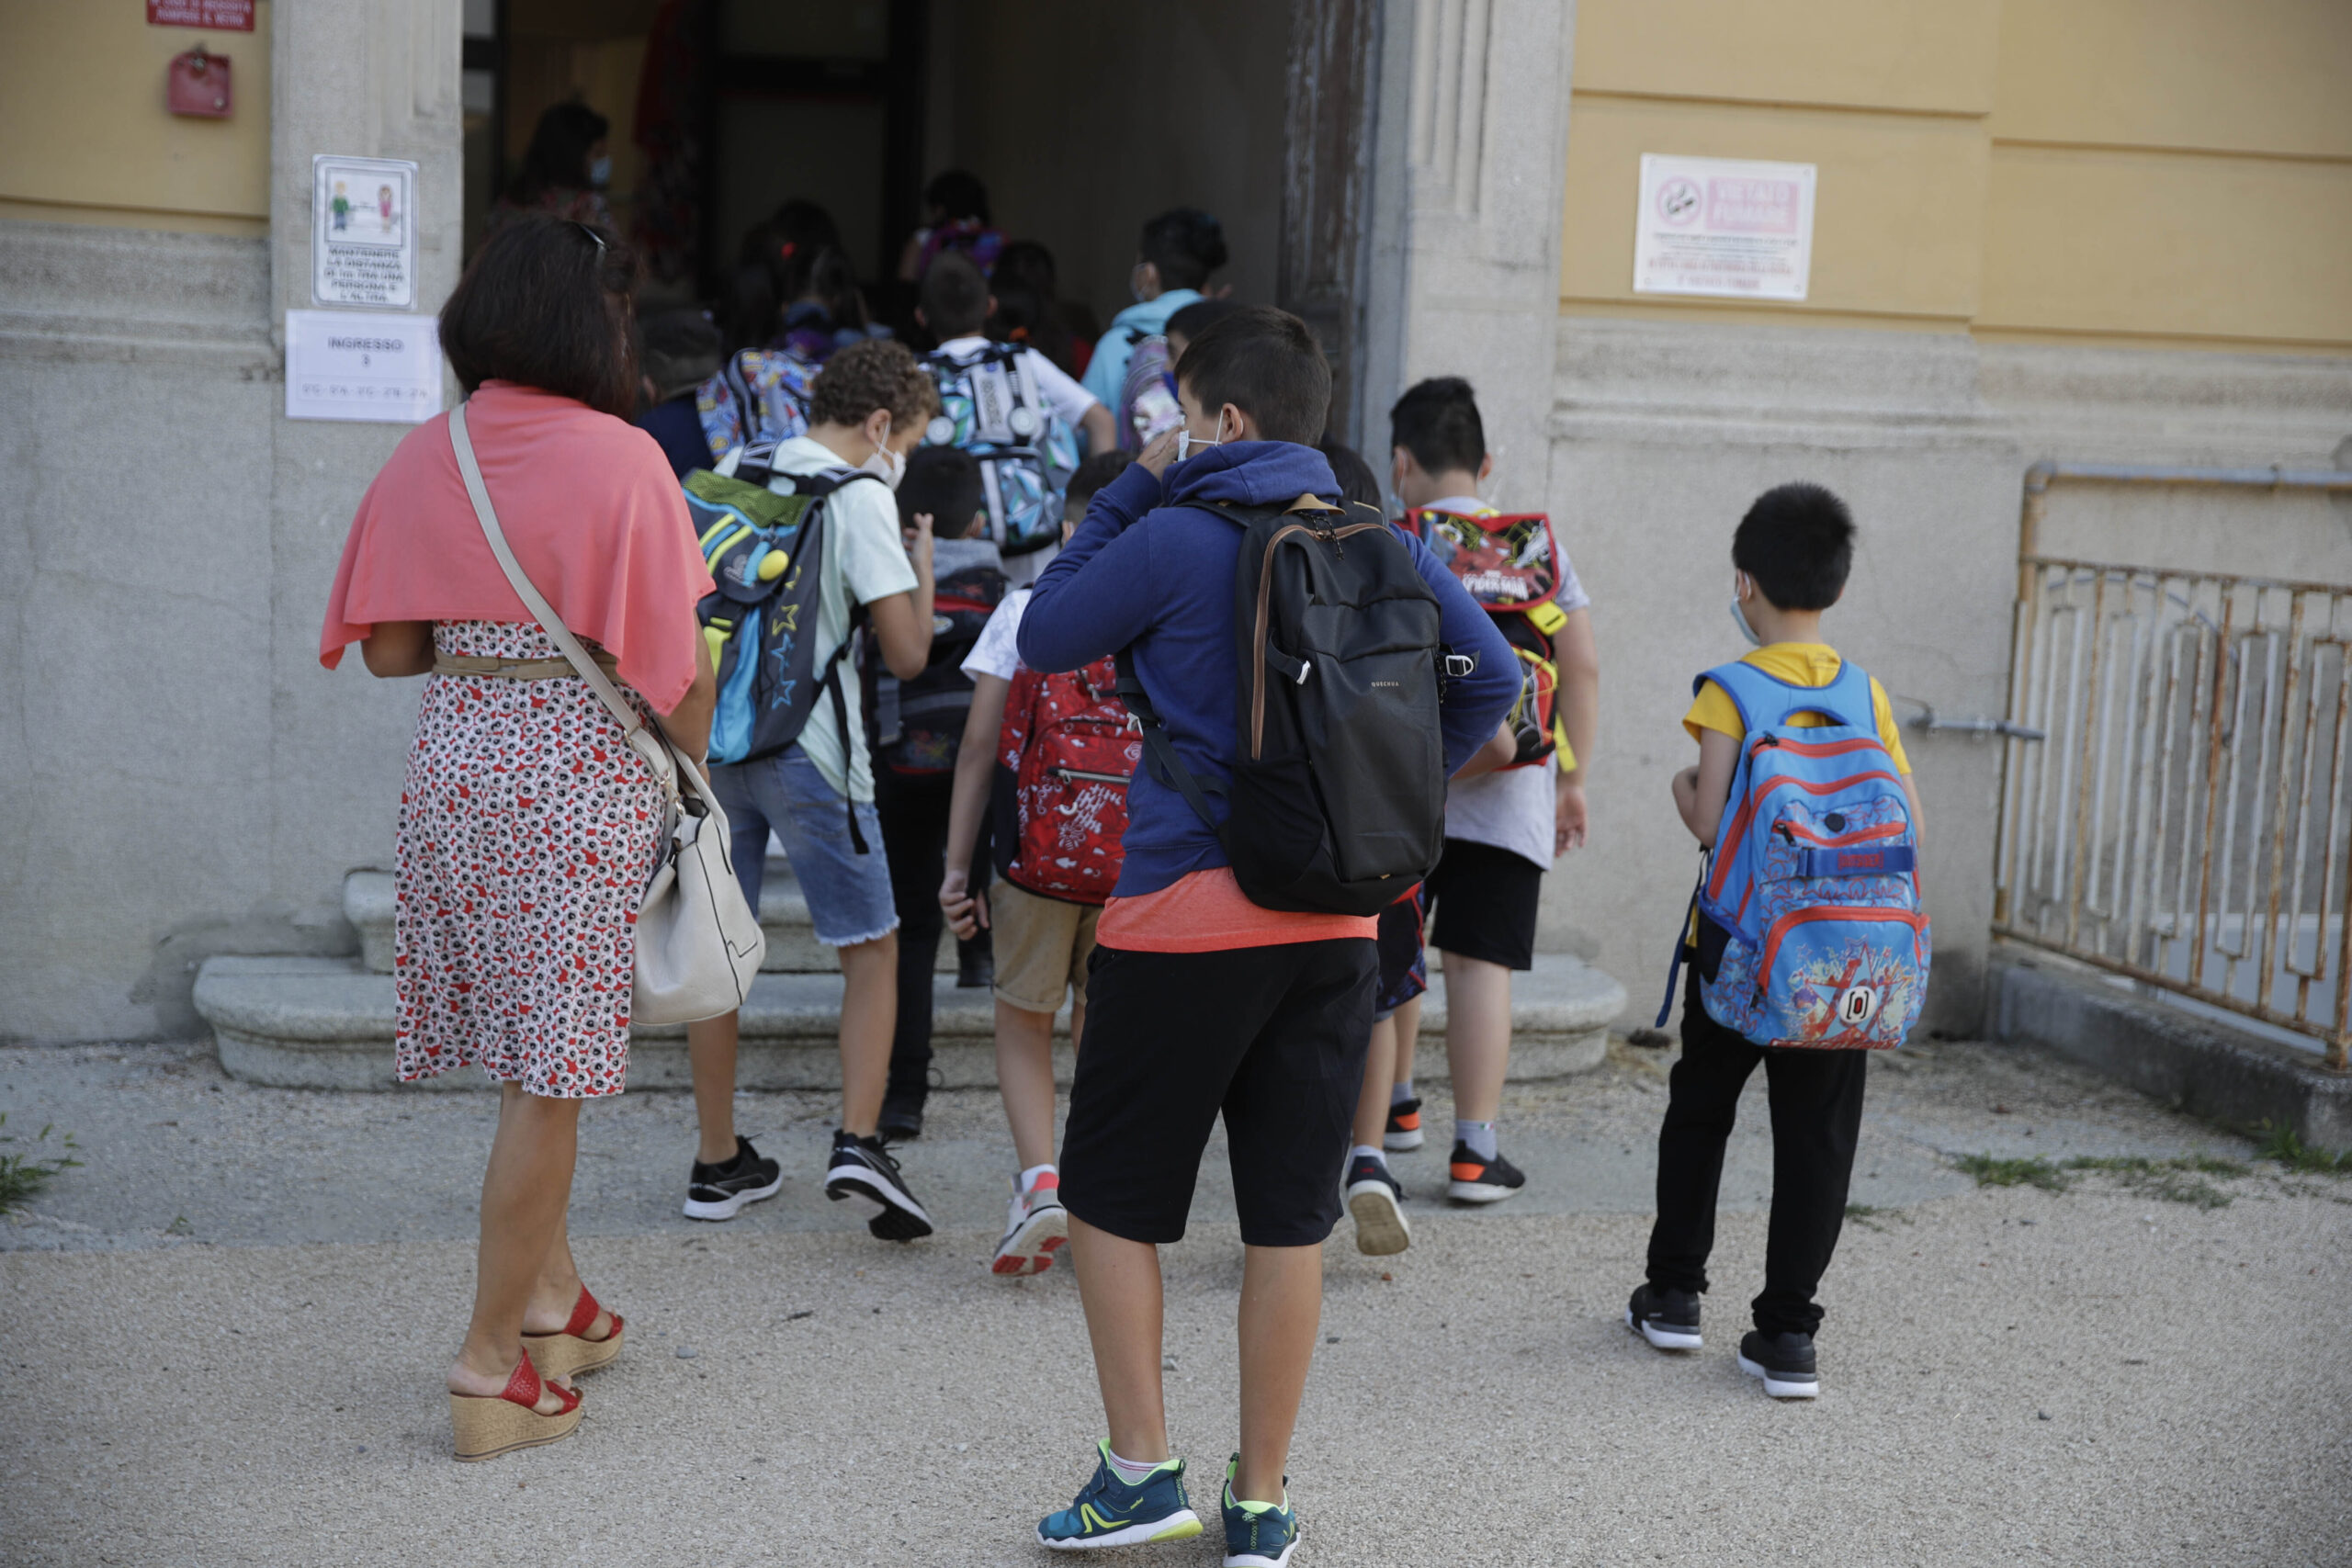 Μιλάνο: Σχολείο αποφασίζει κλείσιμο για το Ραμαζάνι, επενέβη το Υπουργείο Παιδείας